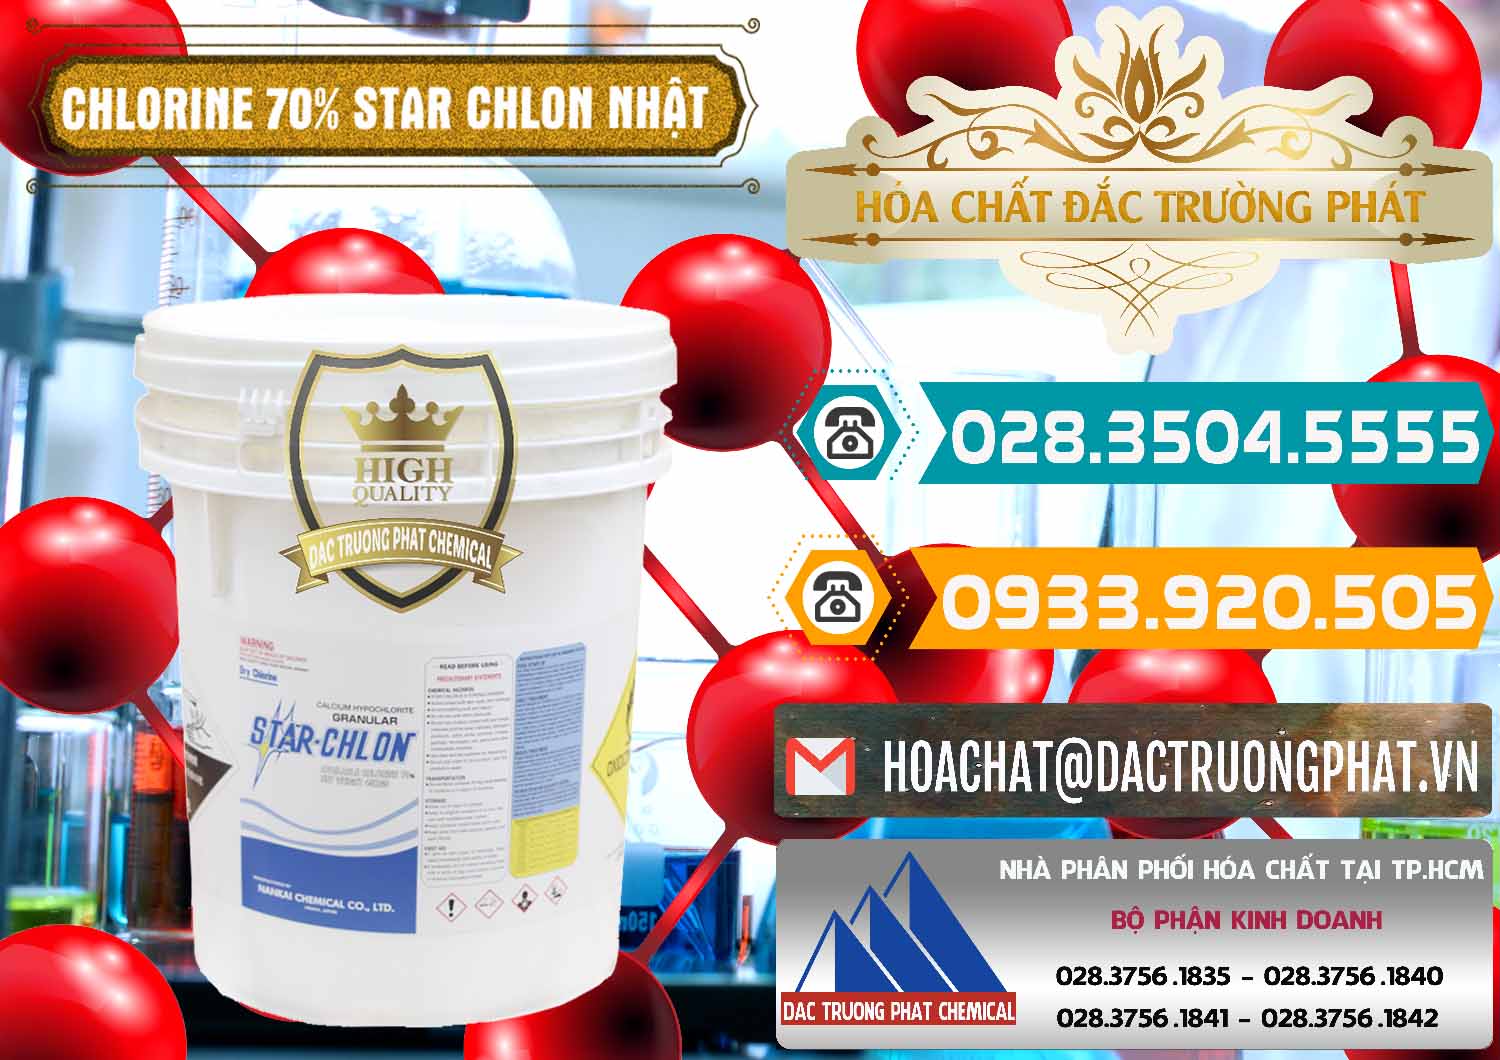 Cty bán ( cung cấp ) Clorin – Chlorine 70% Star Chlon Nhật Bản Japan - 0243 - Nơi chuyên cung cấp & bán hóa chất tại TP.HCM - congtyhoachat.vn